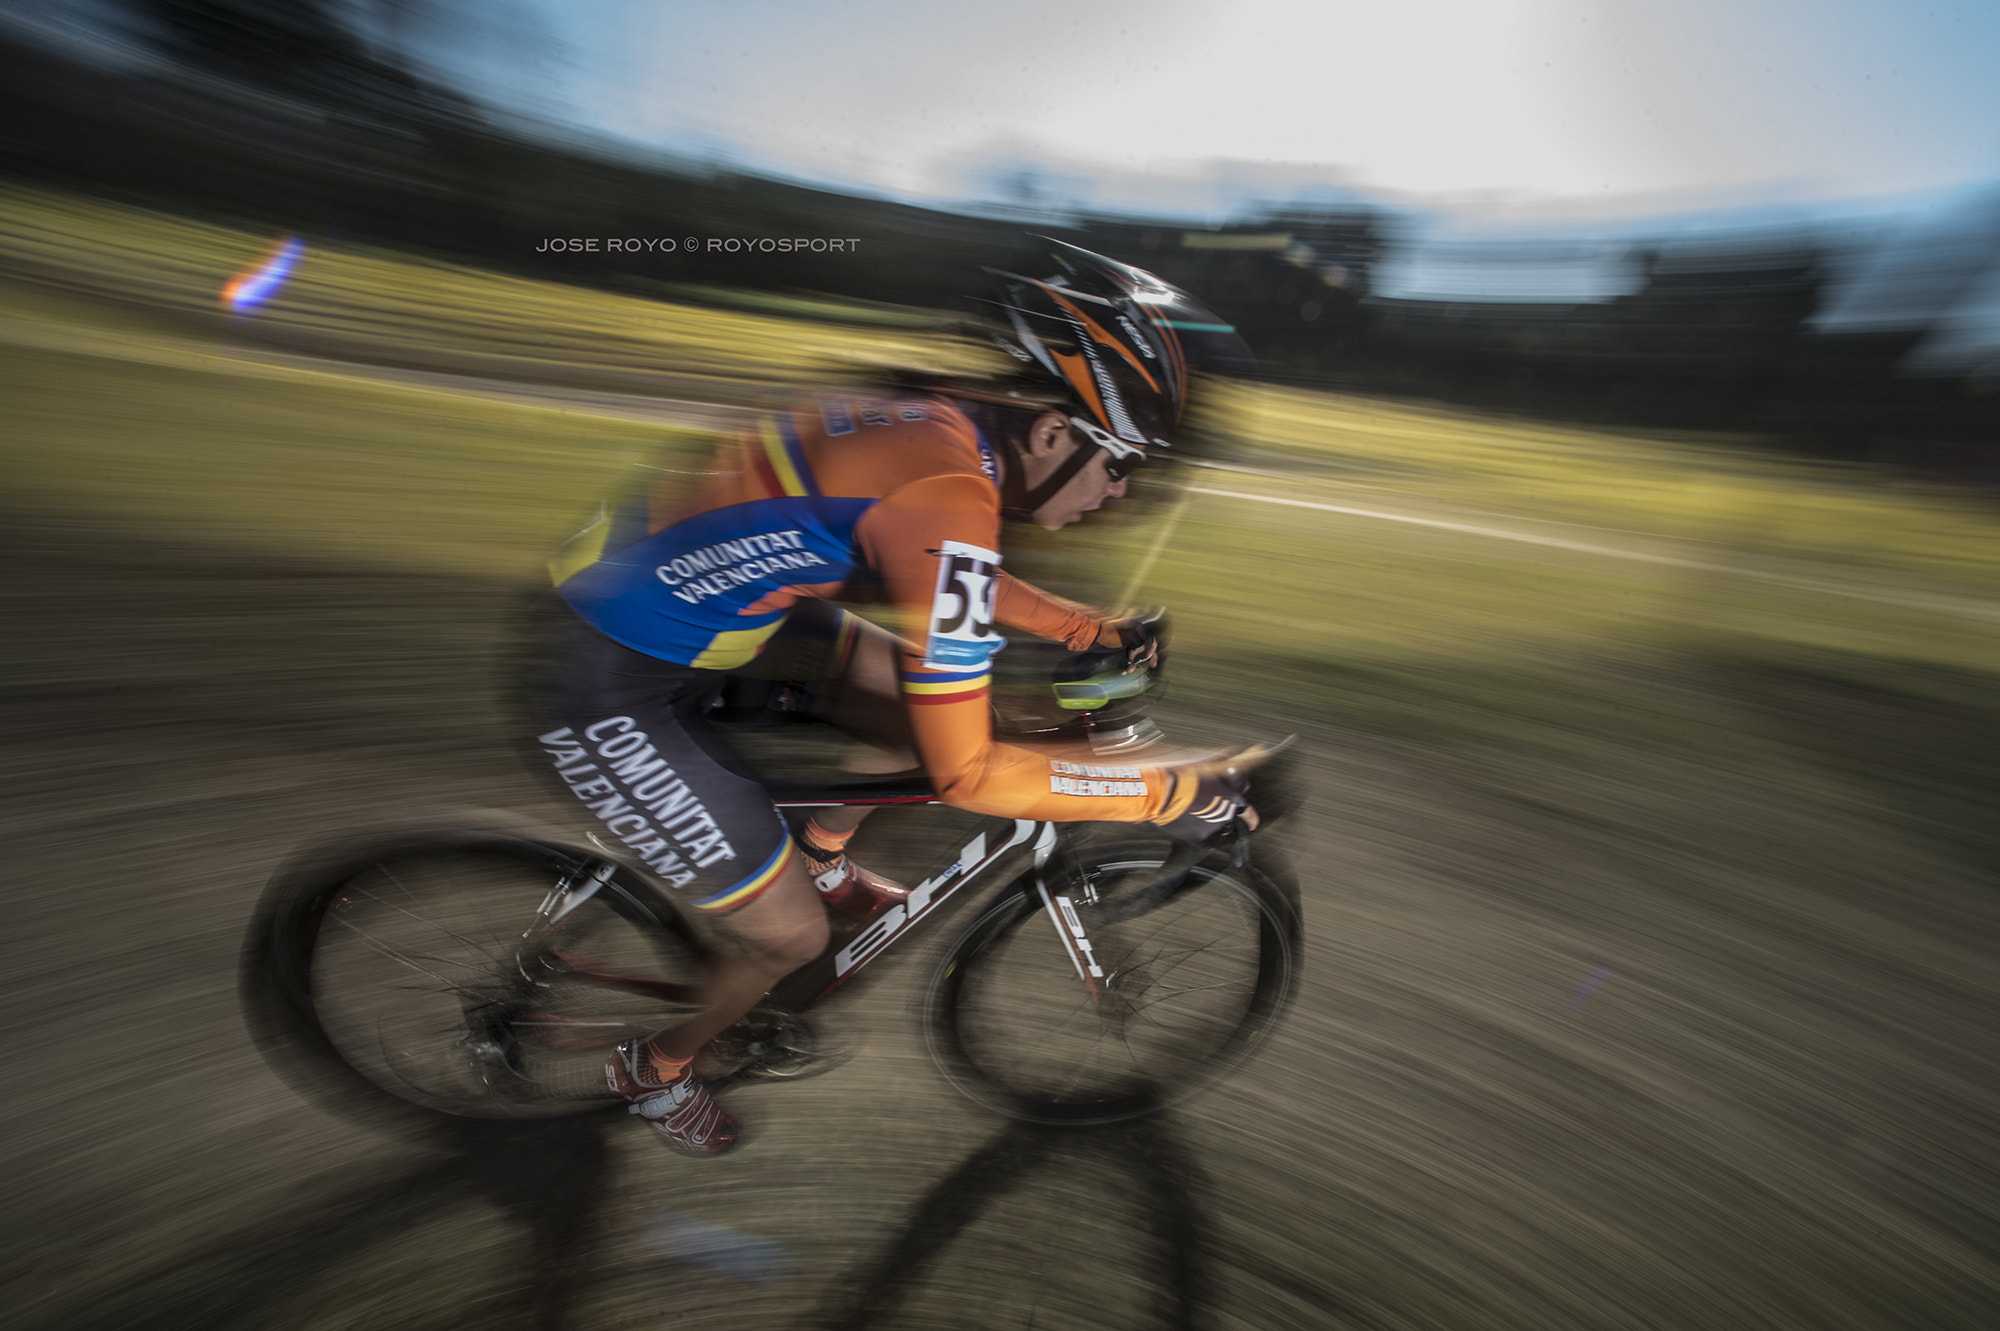 Nikon D4 sample photo. Cto. de españa ciclocross - jose royo - royosport photography